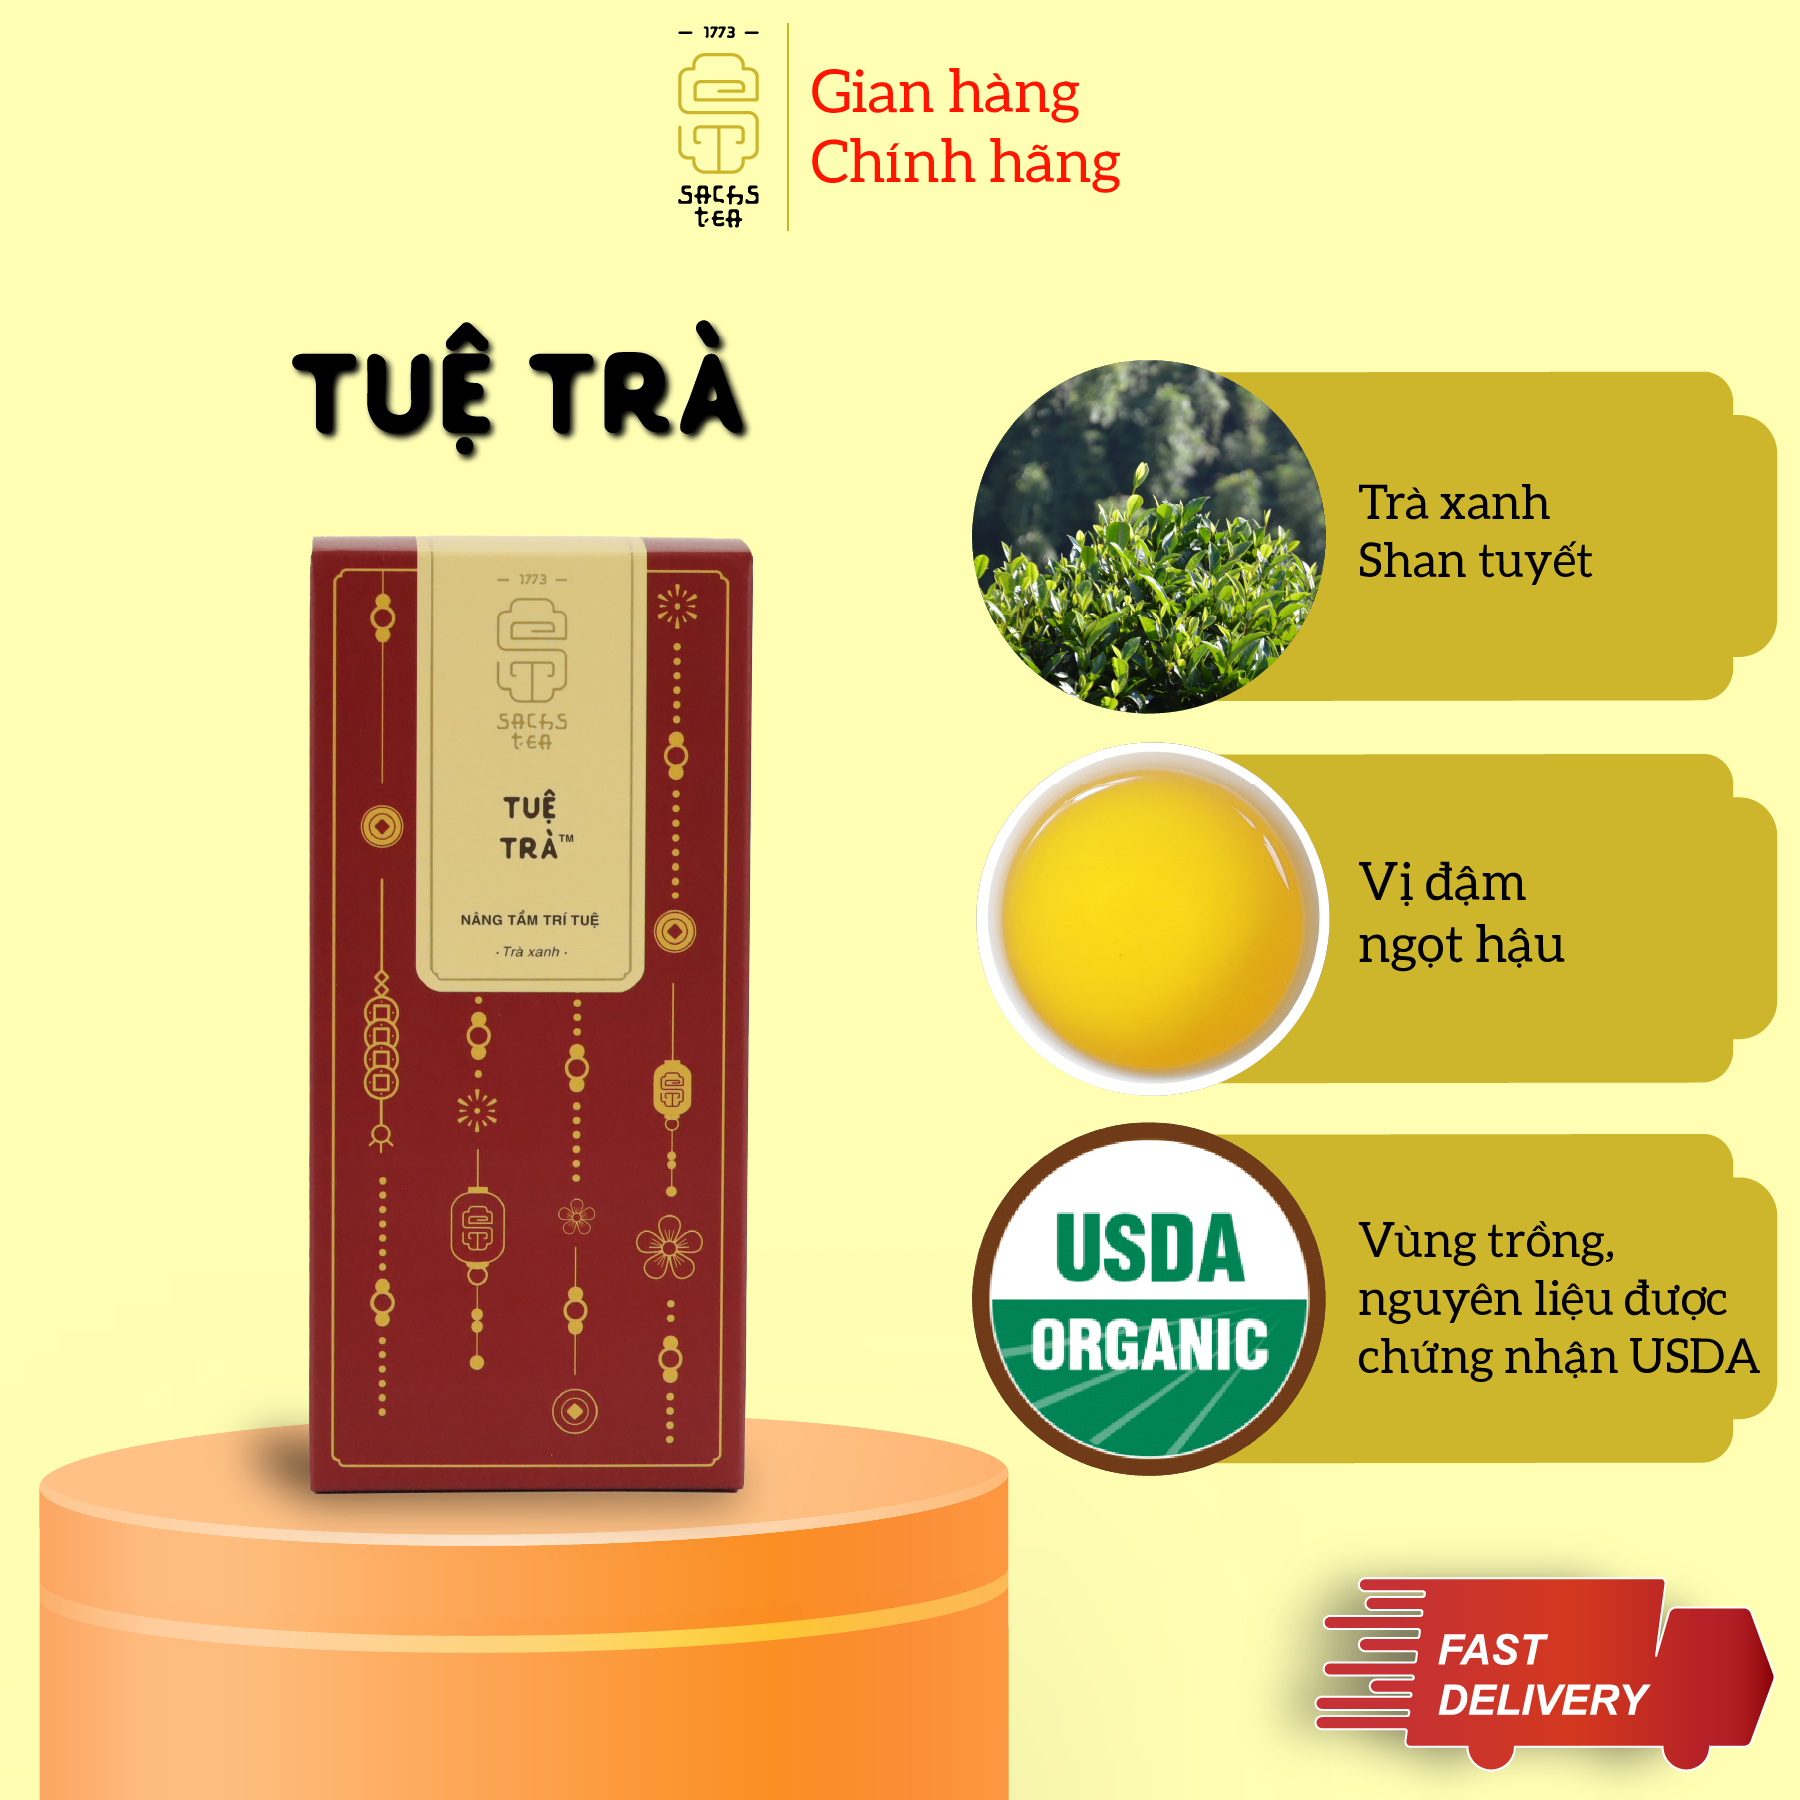 Trà xanh Shan Tuyết SACHS TEA 1773 chè hữu cơ thái nguyên tuệ trà cao cấp 100g/hộp